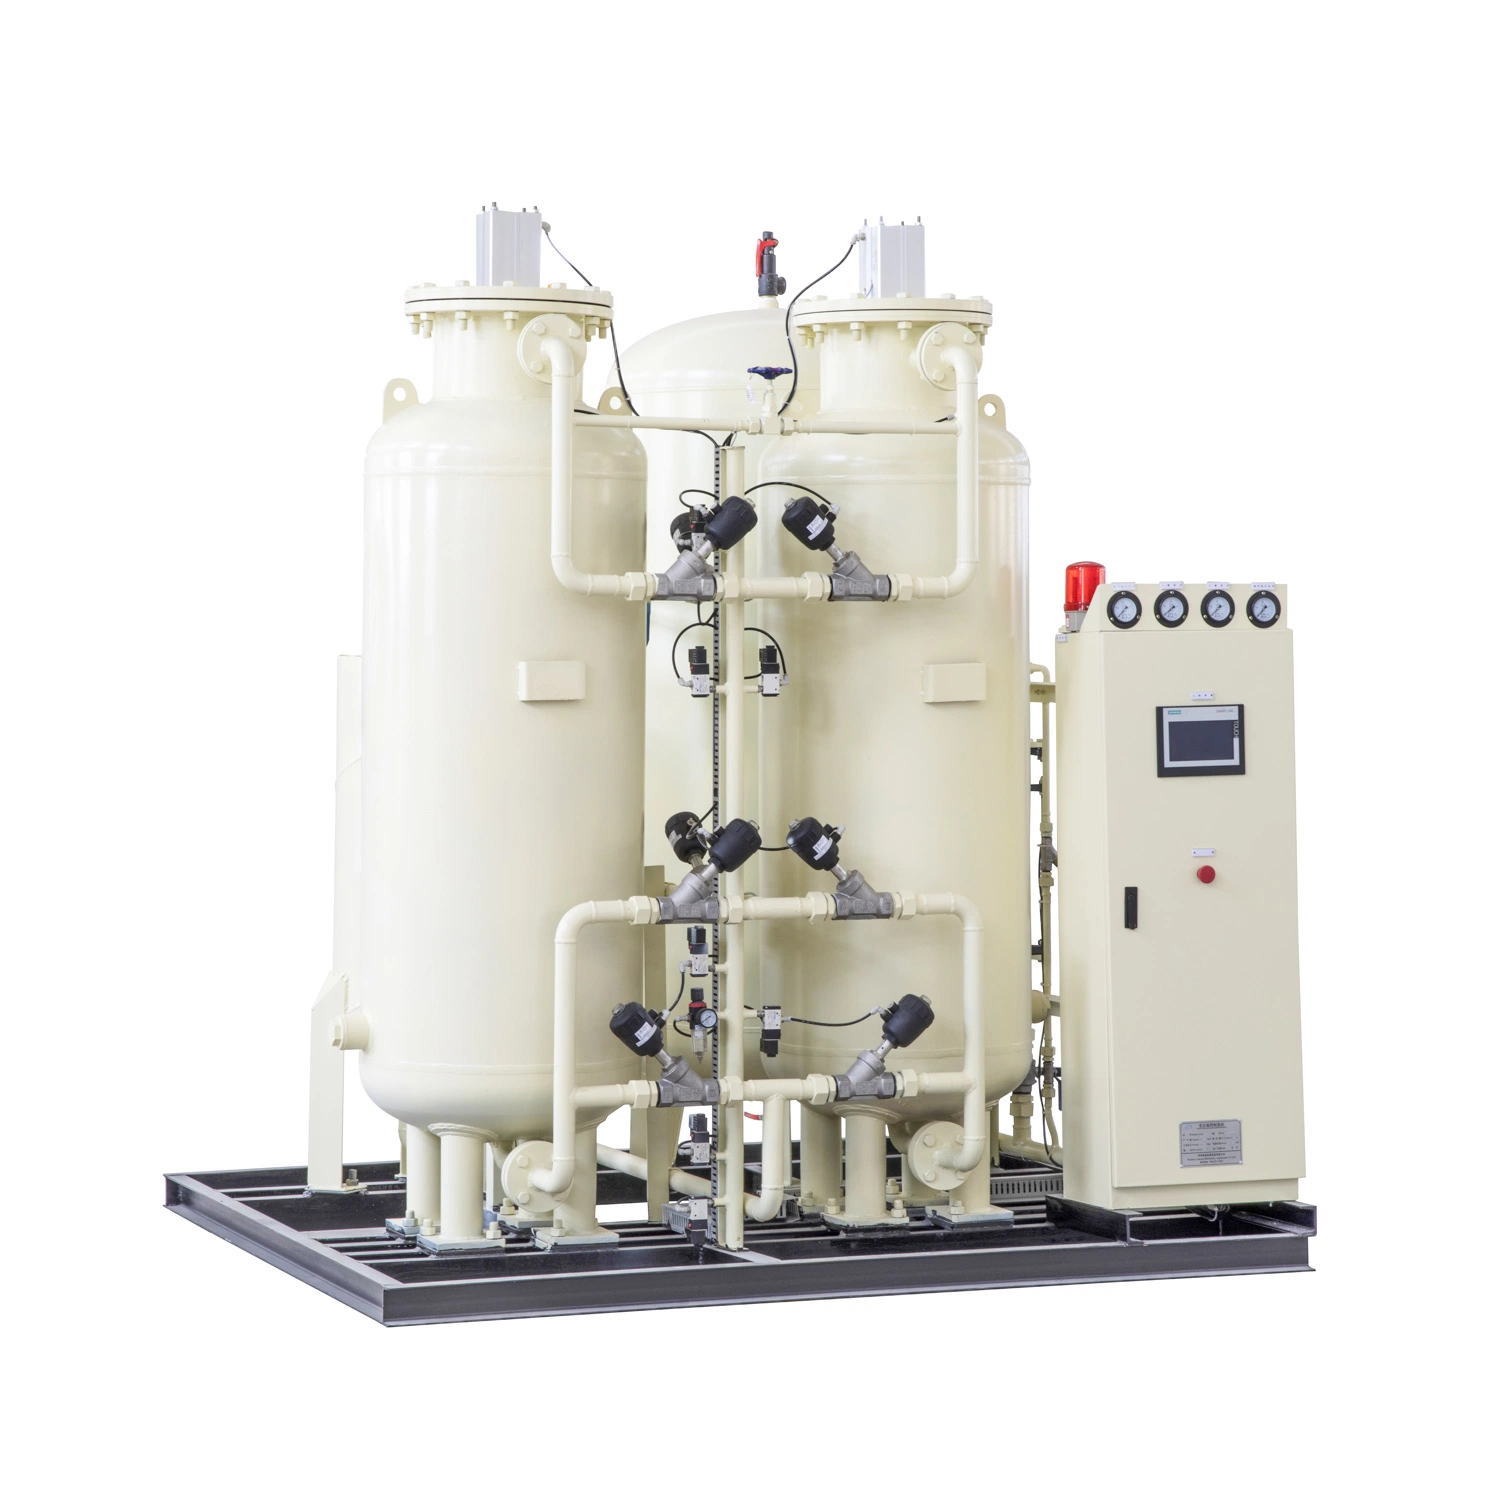 Industrial Psa Oxygen Gas Generator 5L Oxygen Conc Medical Oxygen Psa Generator Generation System